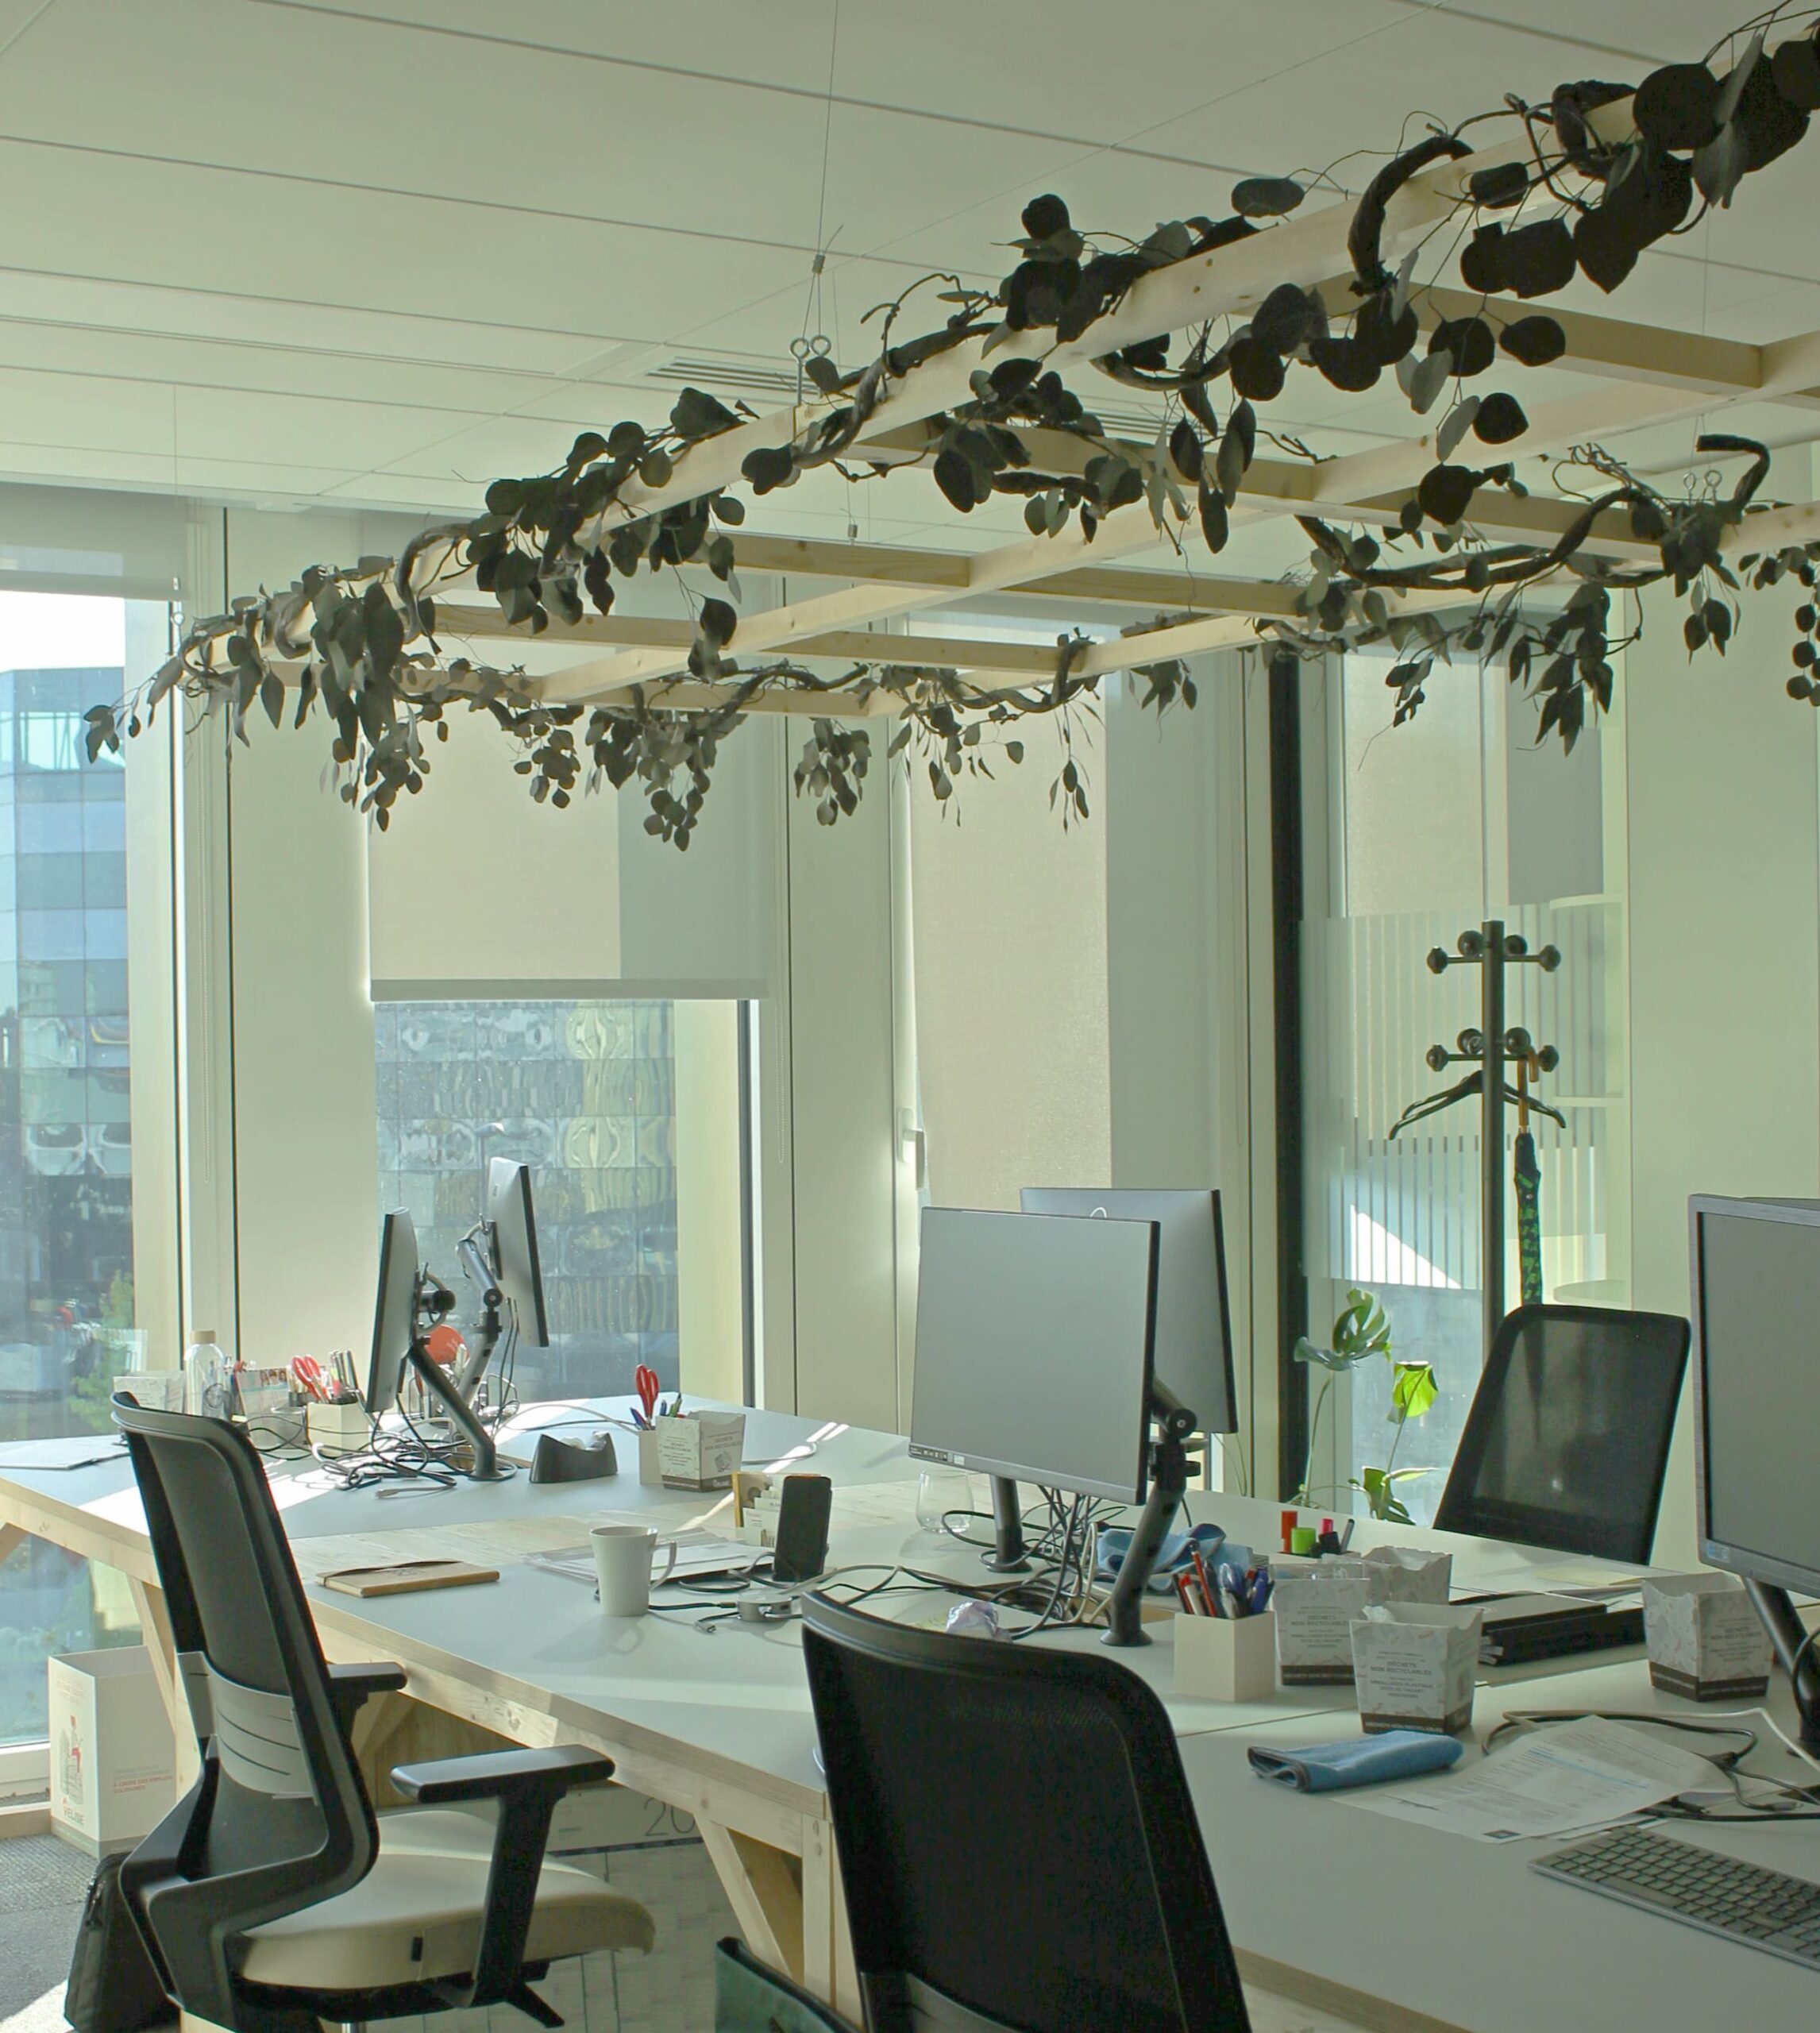 Photographie d'un environnement de travail plaisant : open space avec des ordinateurs et des plantes artificielles sur des claustras pour décorer